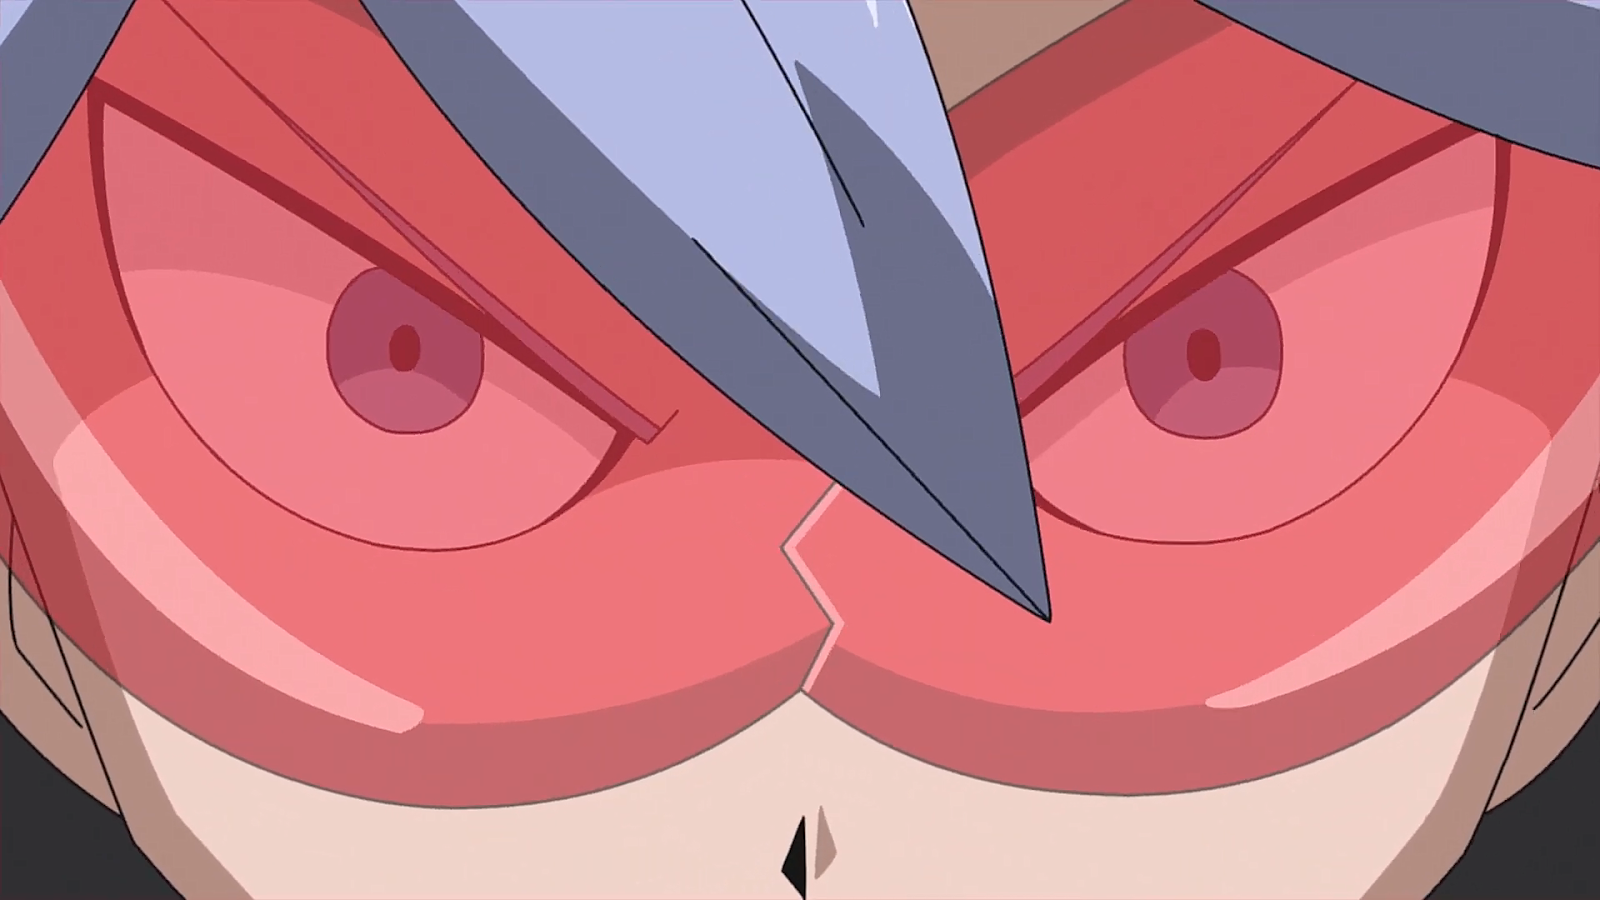 Perfil: Sword ~ PMD, Acervo de Imagens de Digimon e Pokémon